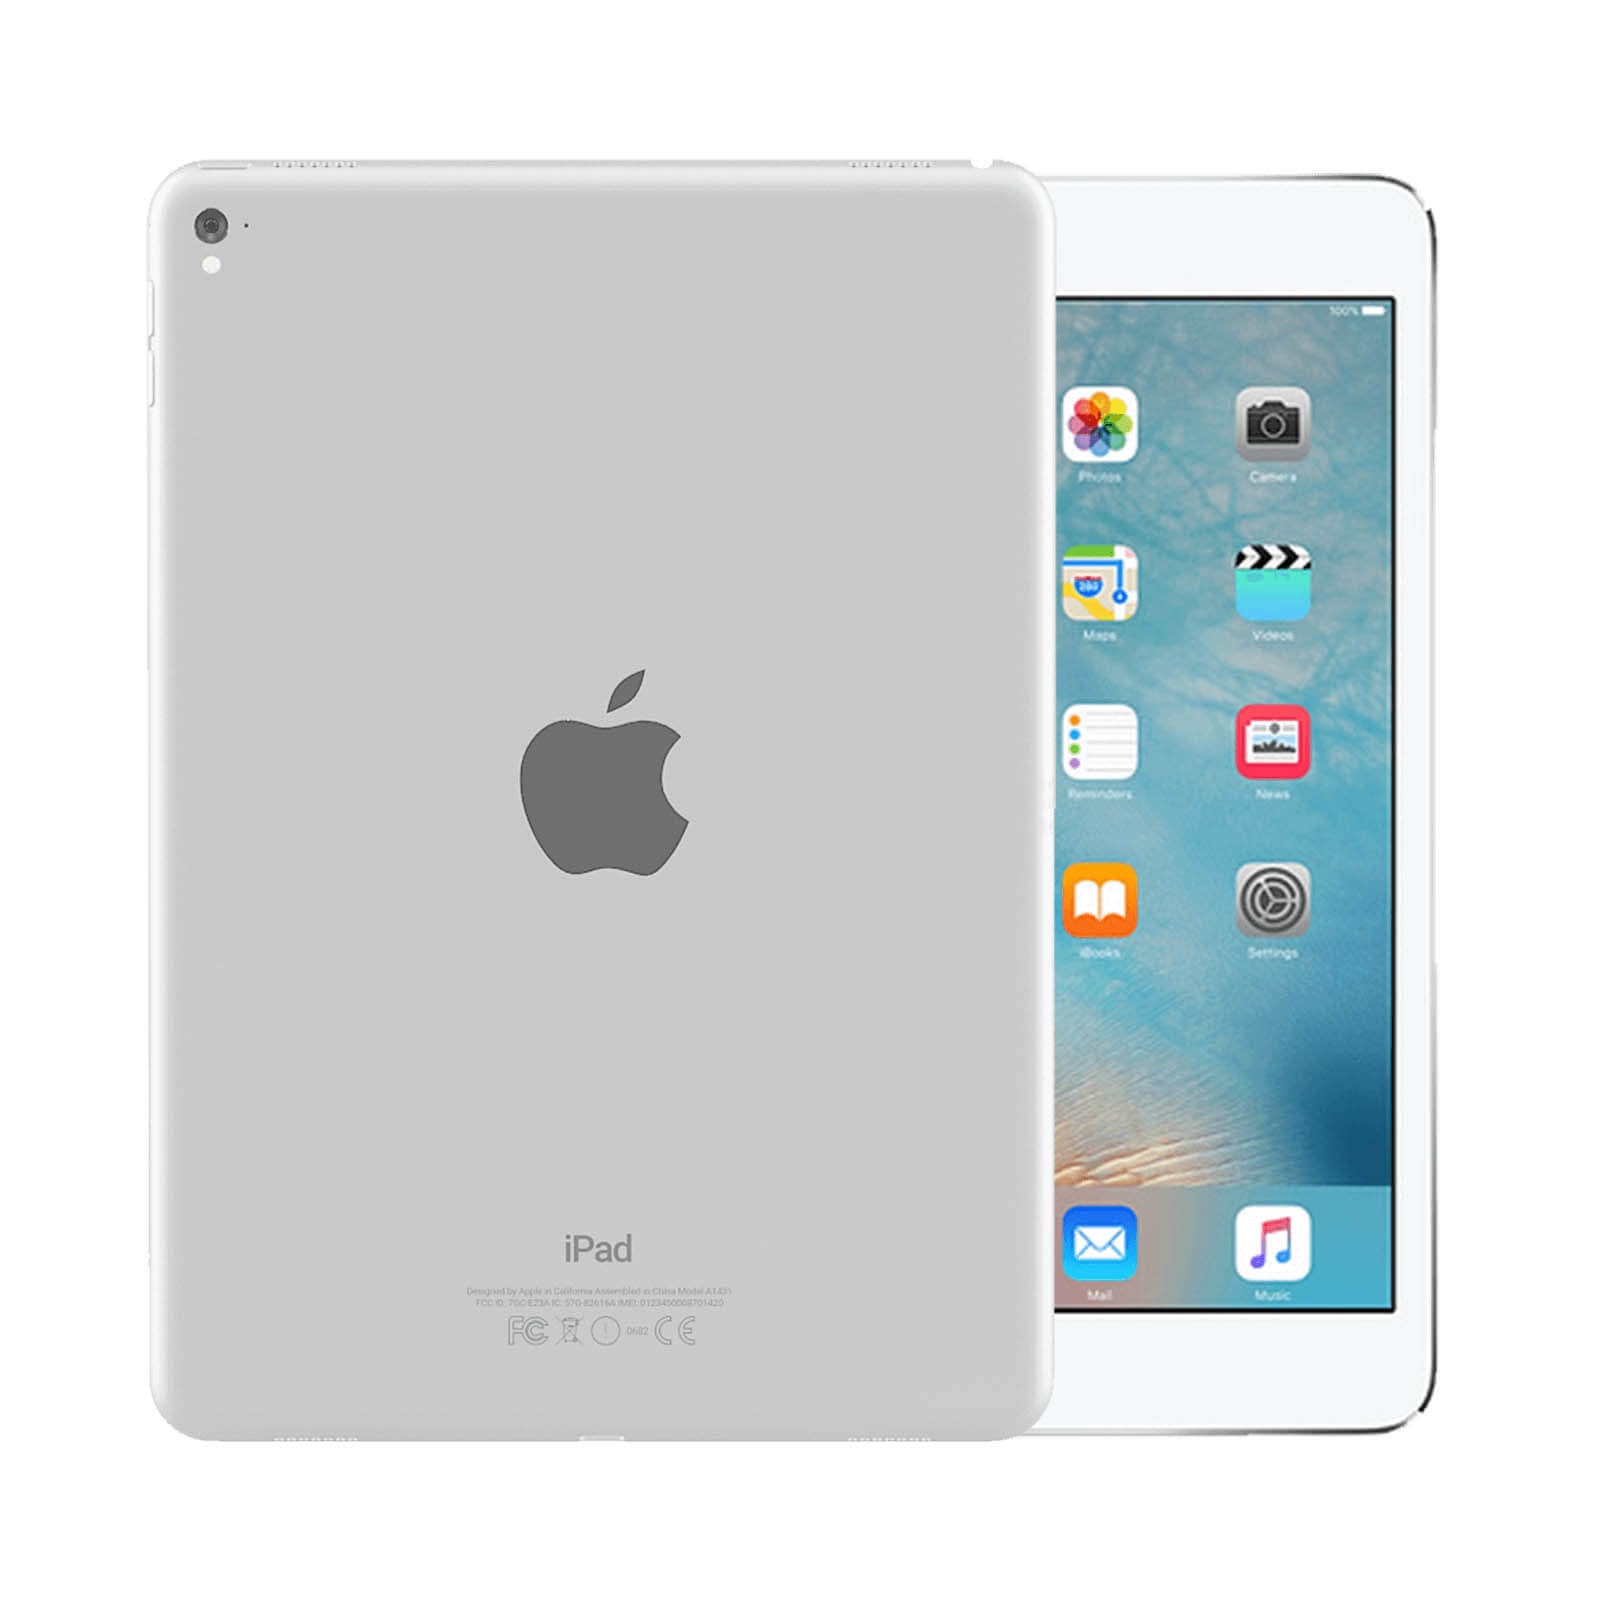 iPad Pro 9.7 Inch 128GB Silver Very Good - WiFi